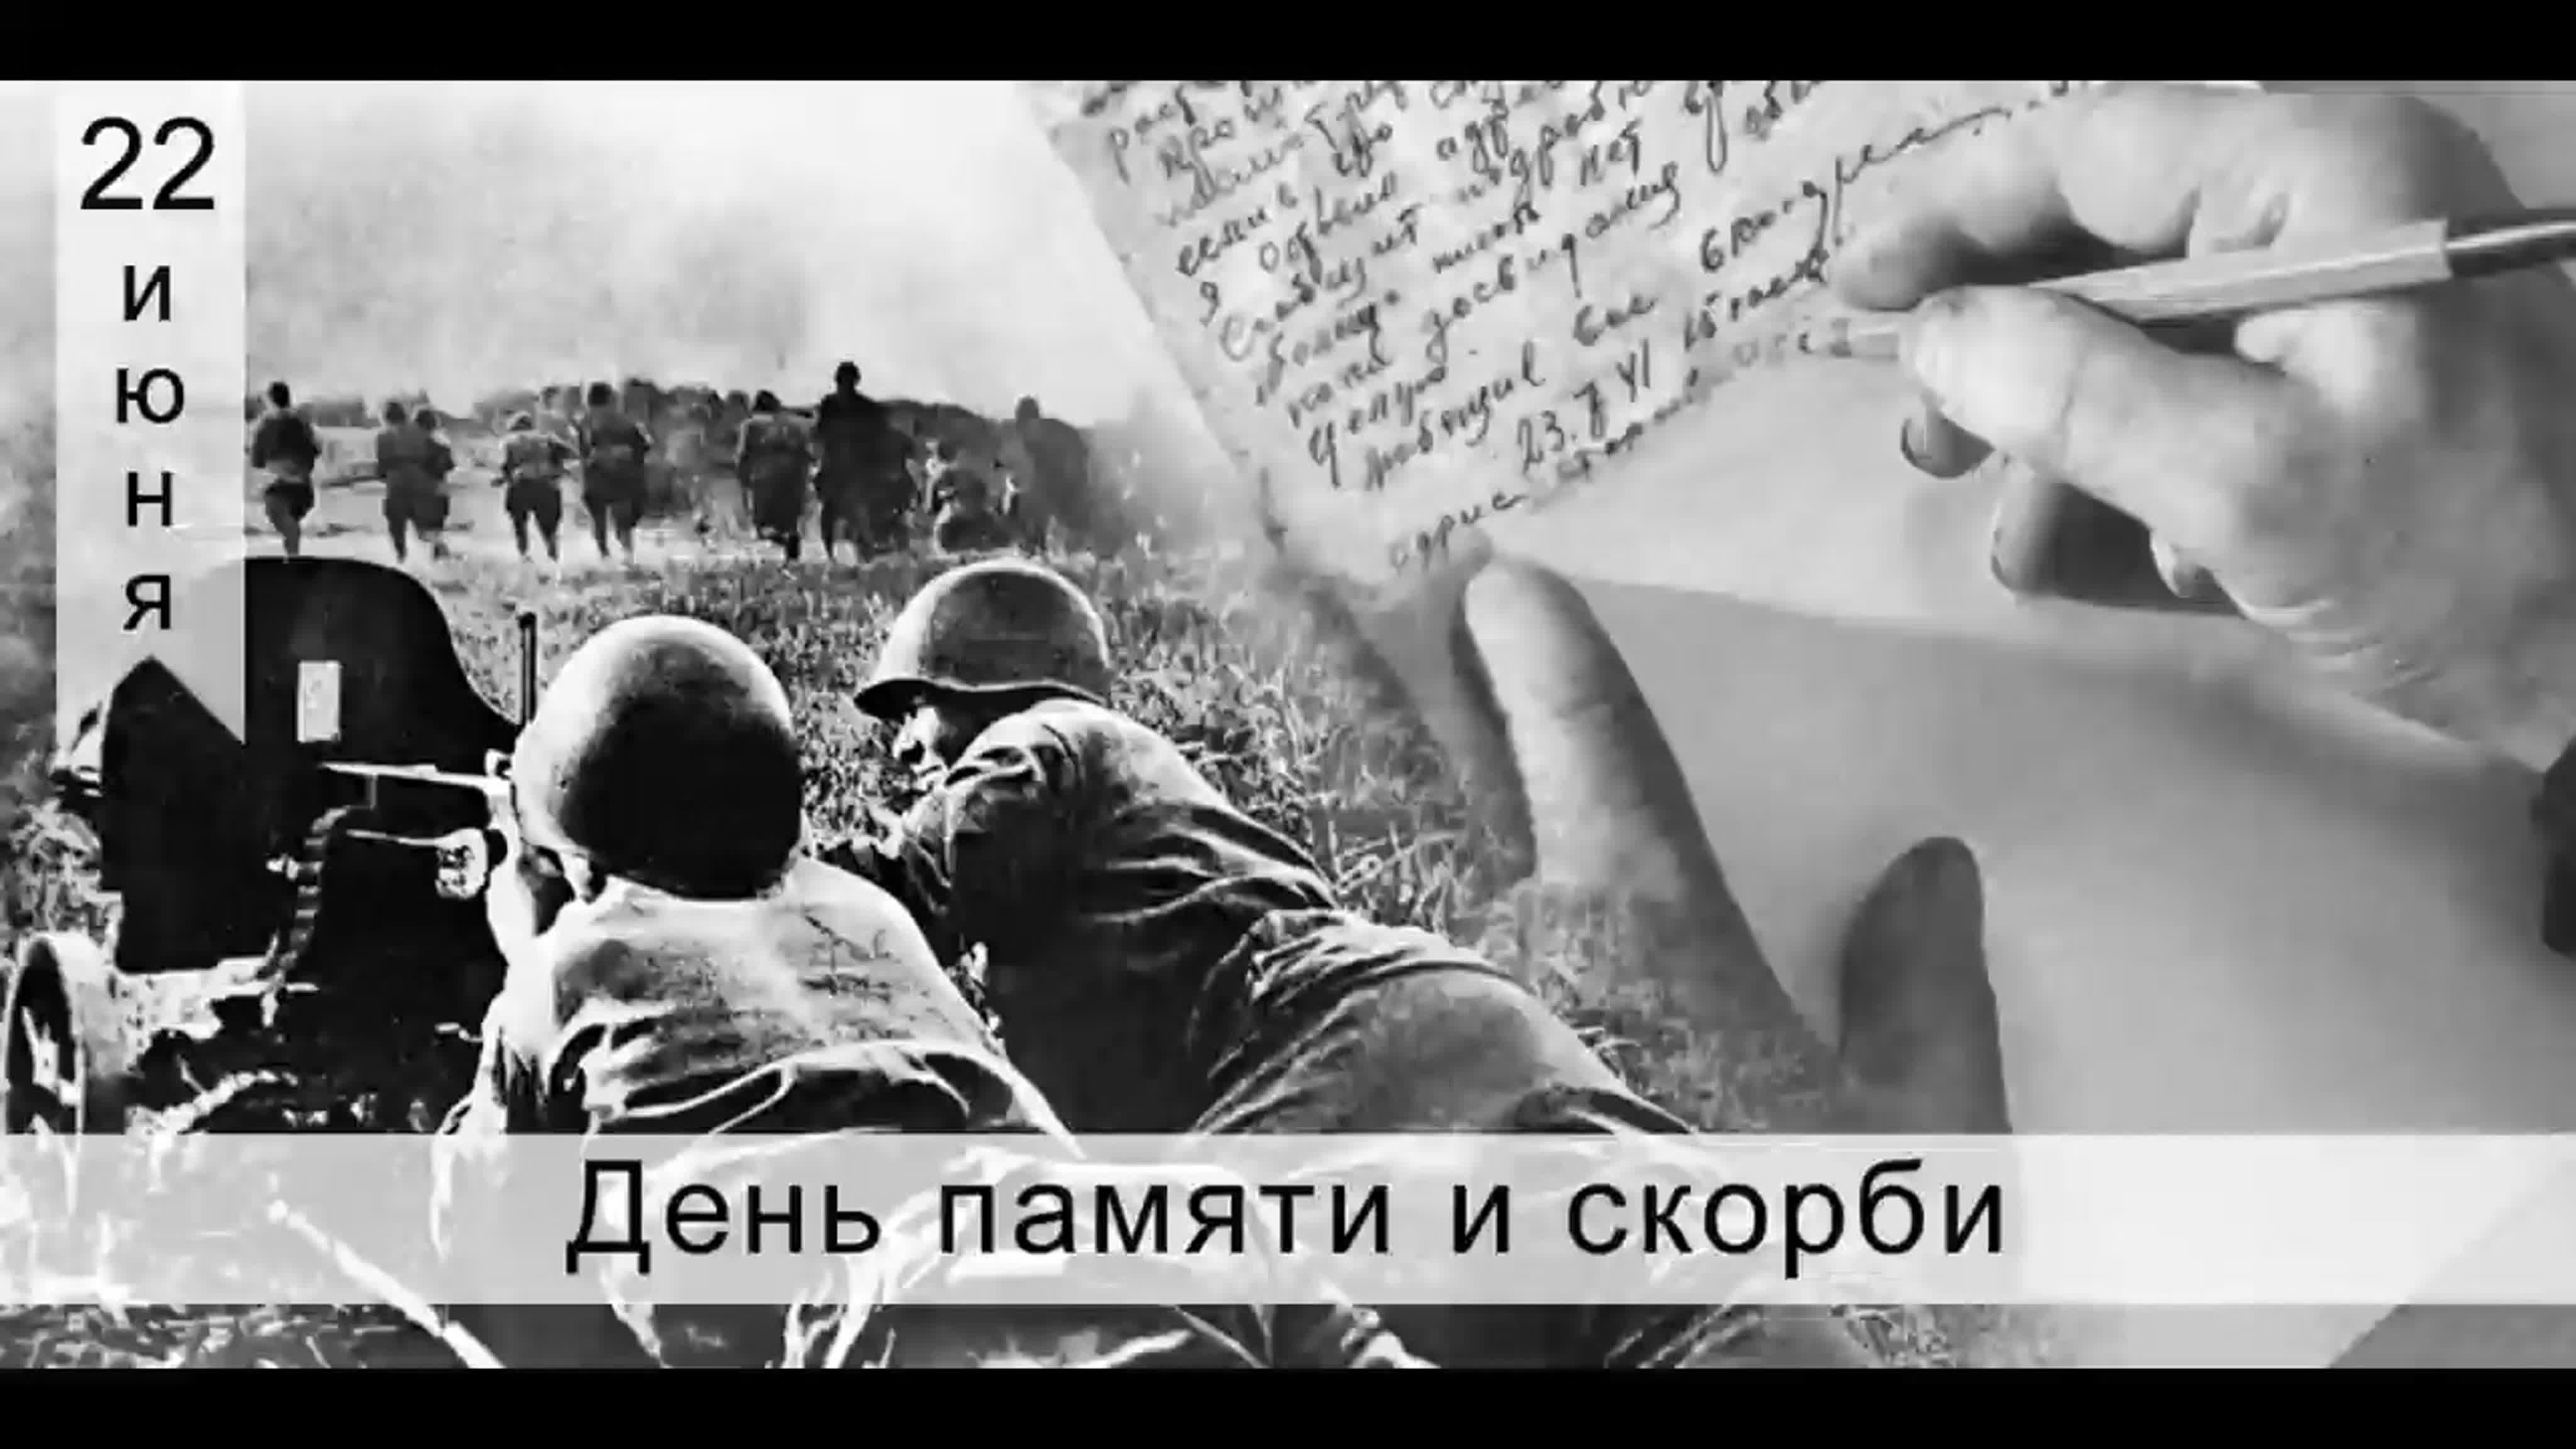 22 июня имена. 22.06.1941 Начало ВОВ. 22 Июня день памяти и скорби день начала Великой Отечественной войны.